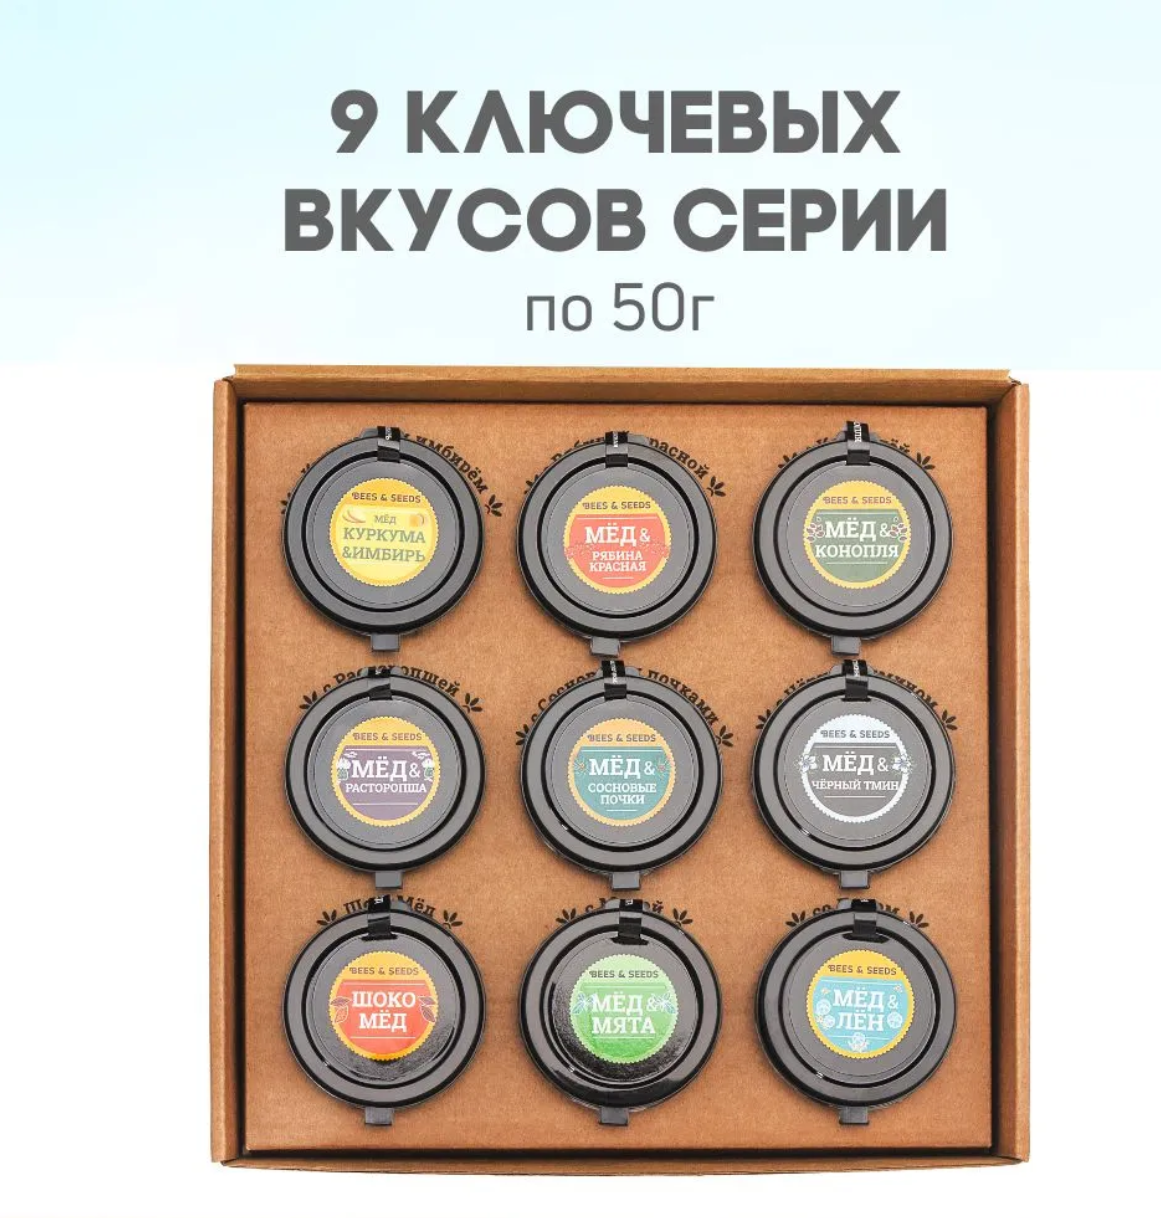 Подарочный набор ассорти медовых урбечей BEES & SEEDS из девяти вкусов, 9 штук по 50 г